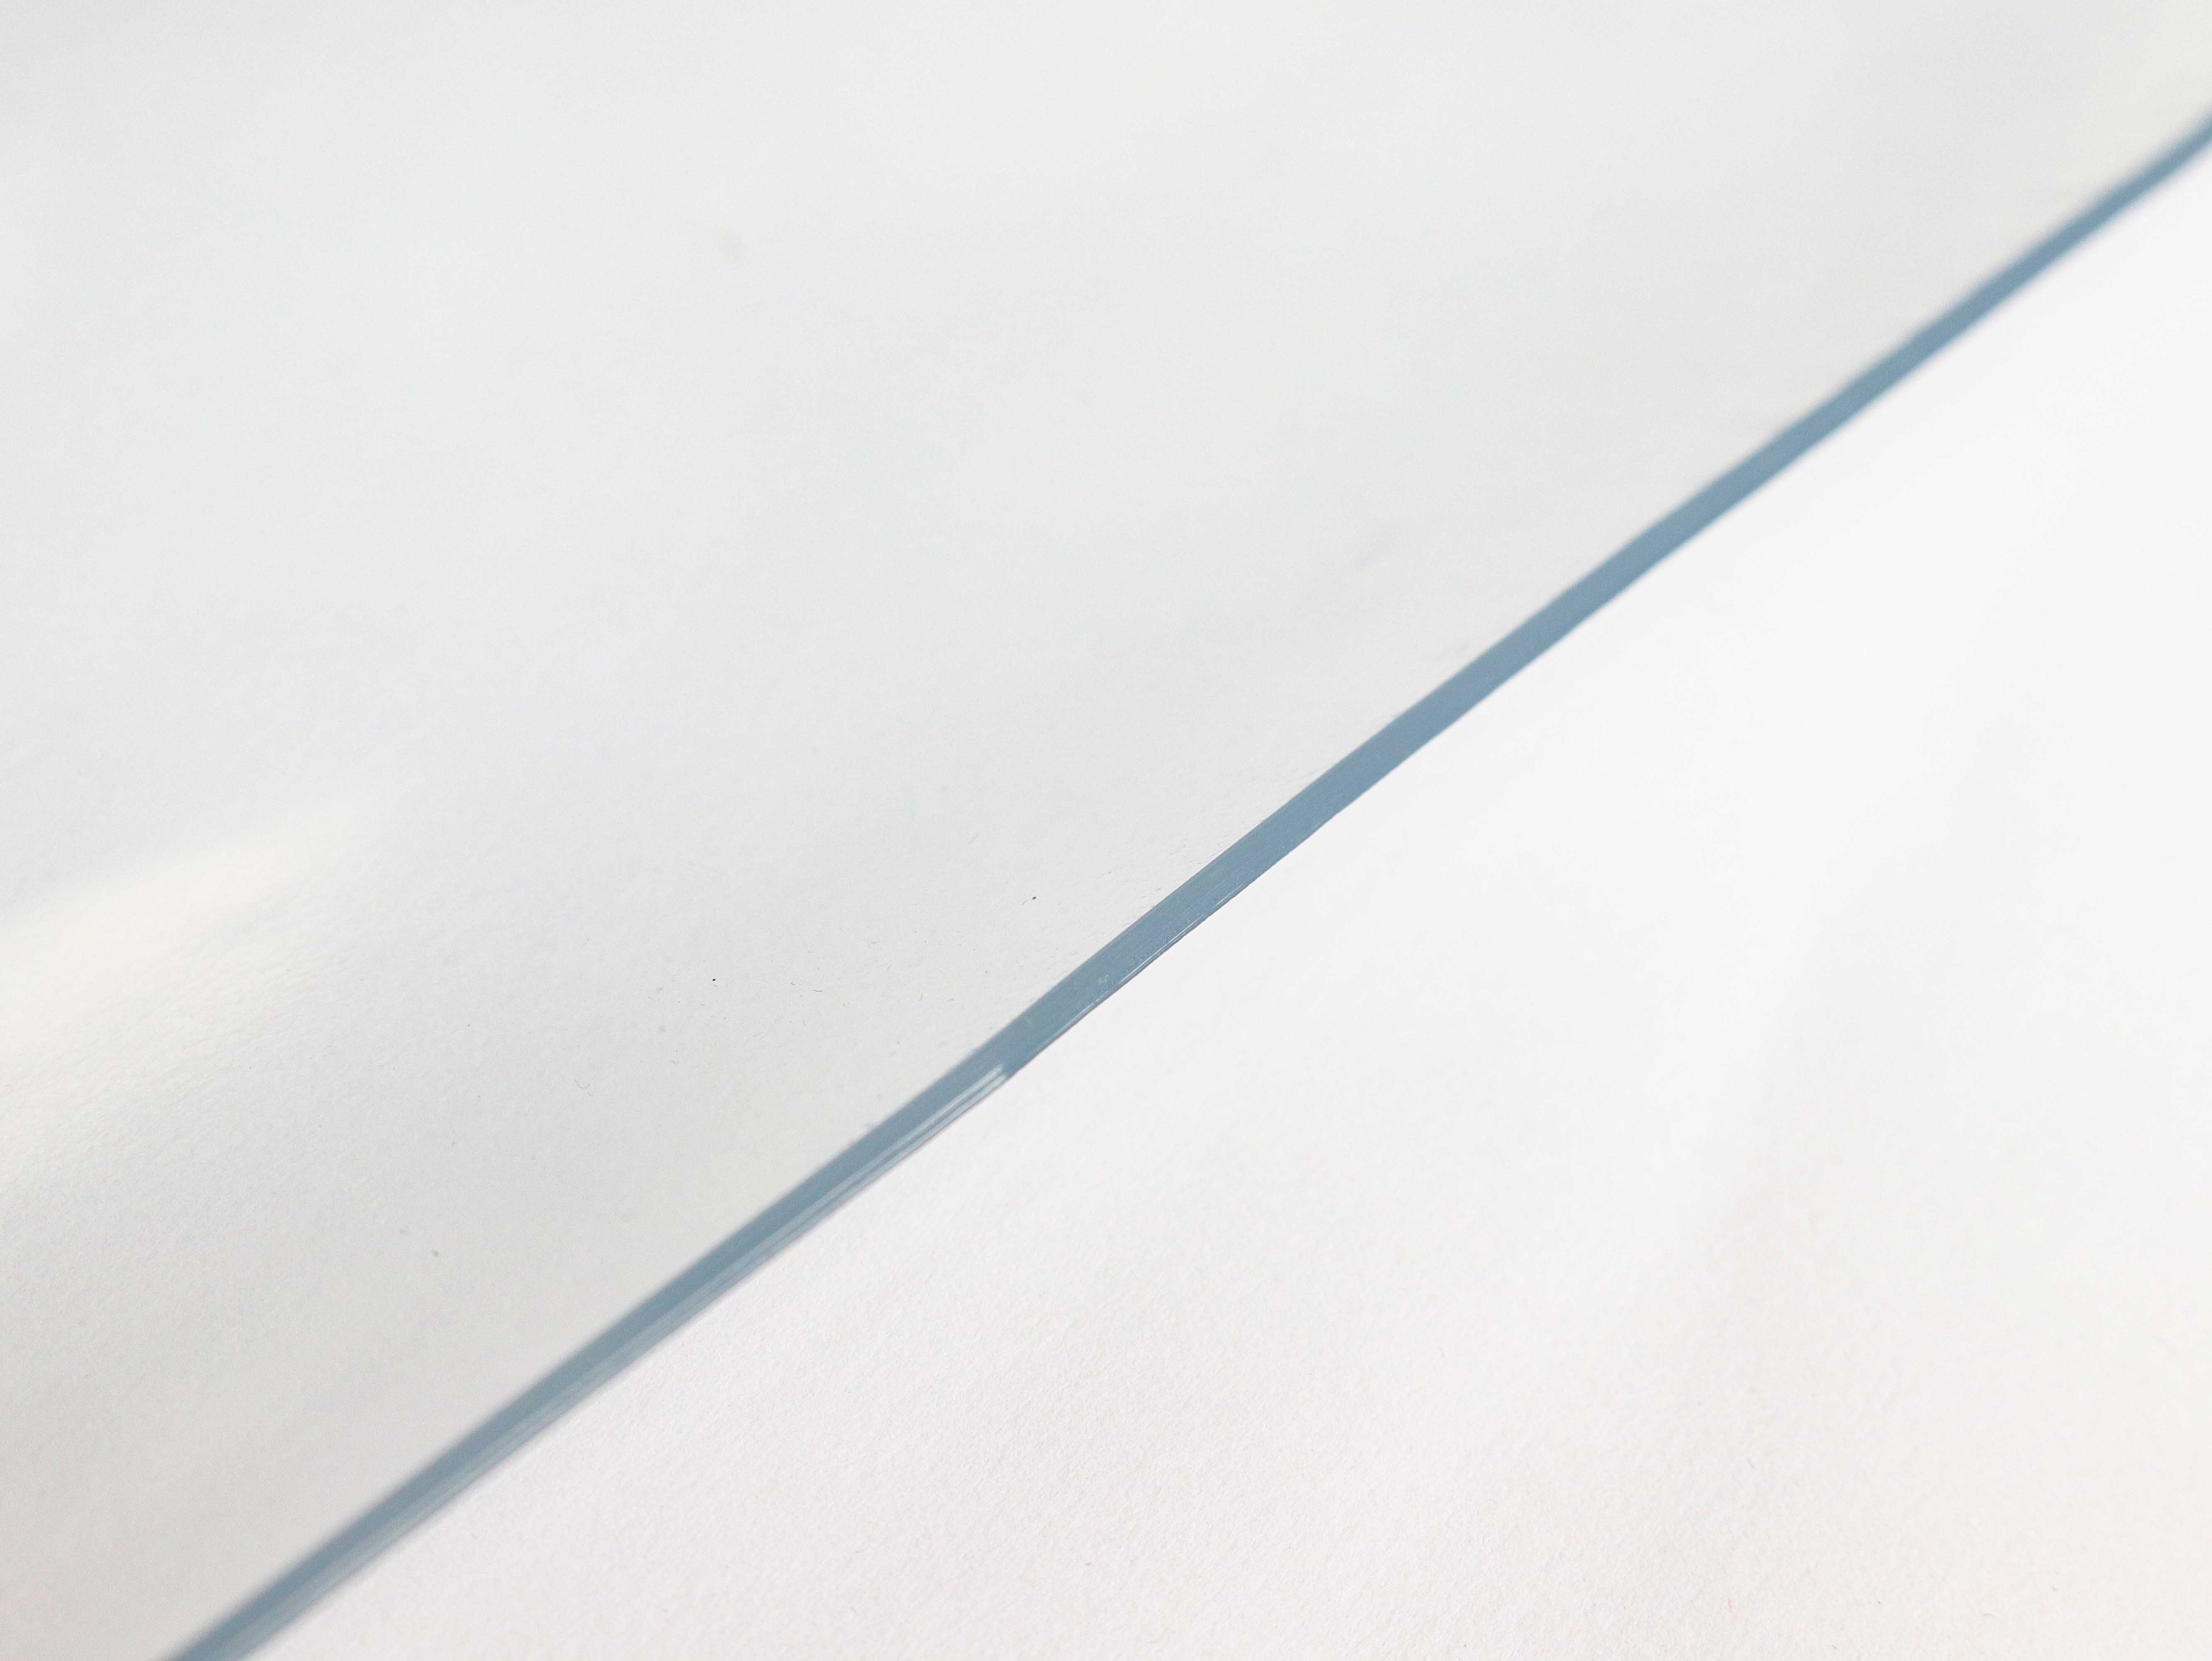 Klarsichtfolie 2mm stark & 80 cm breit Transparenter Tischschutz aus 100% PVC